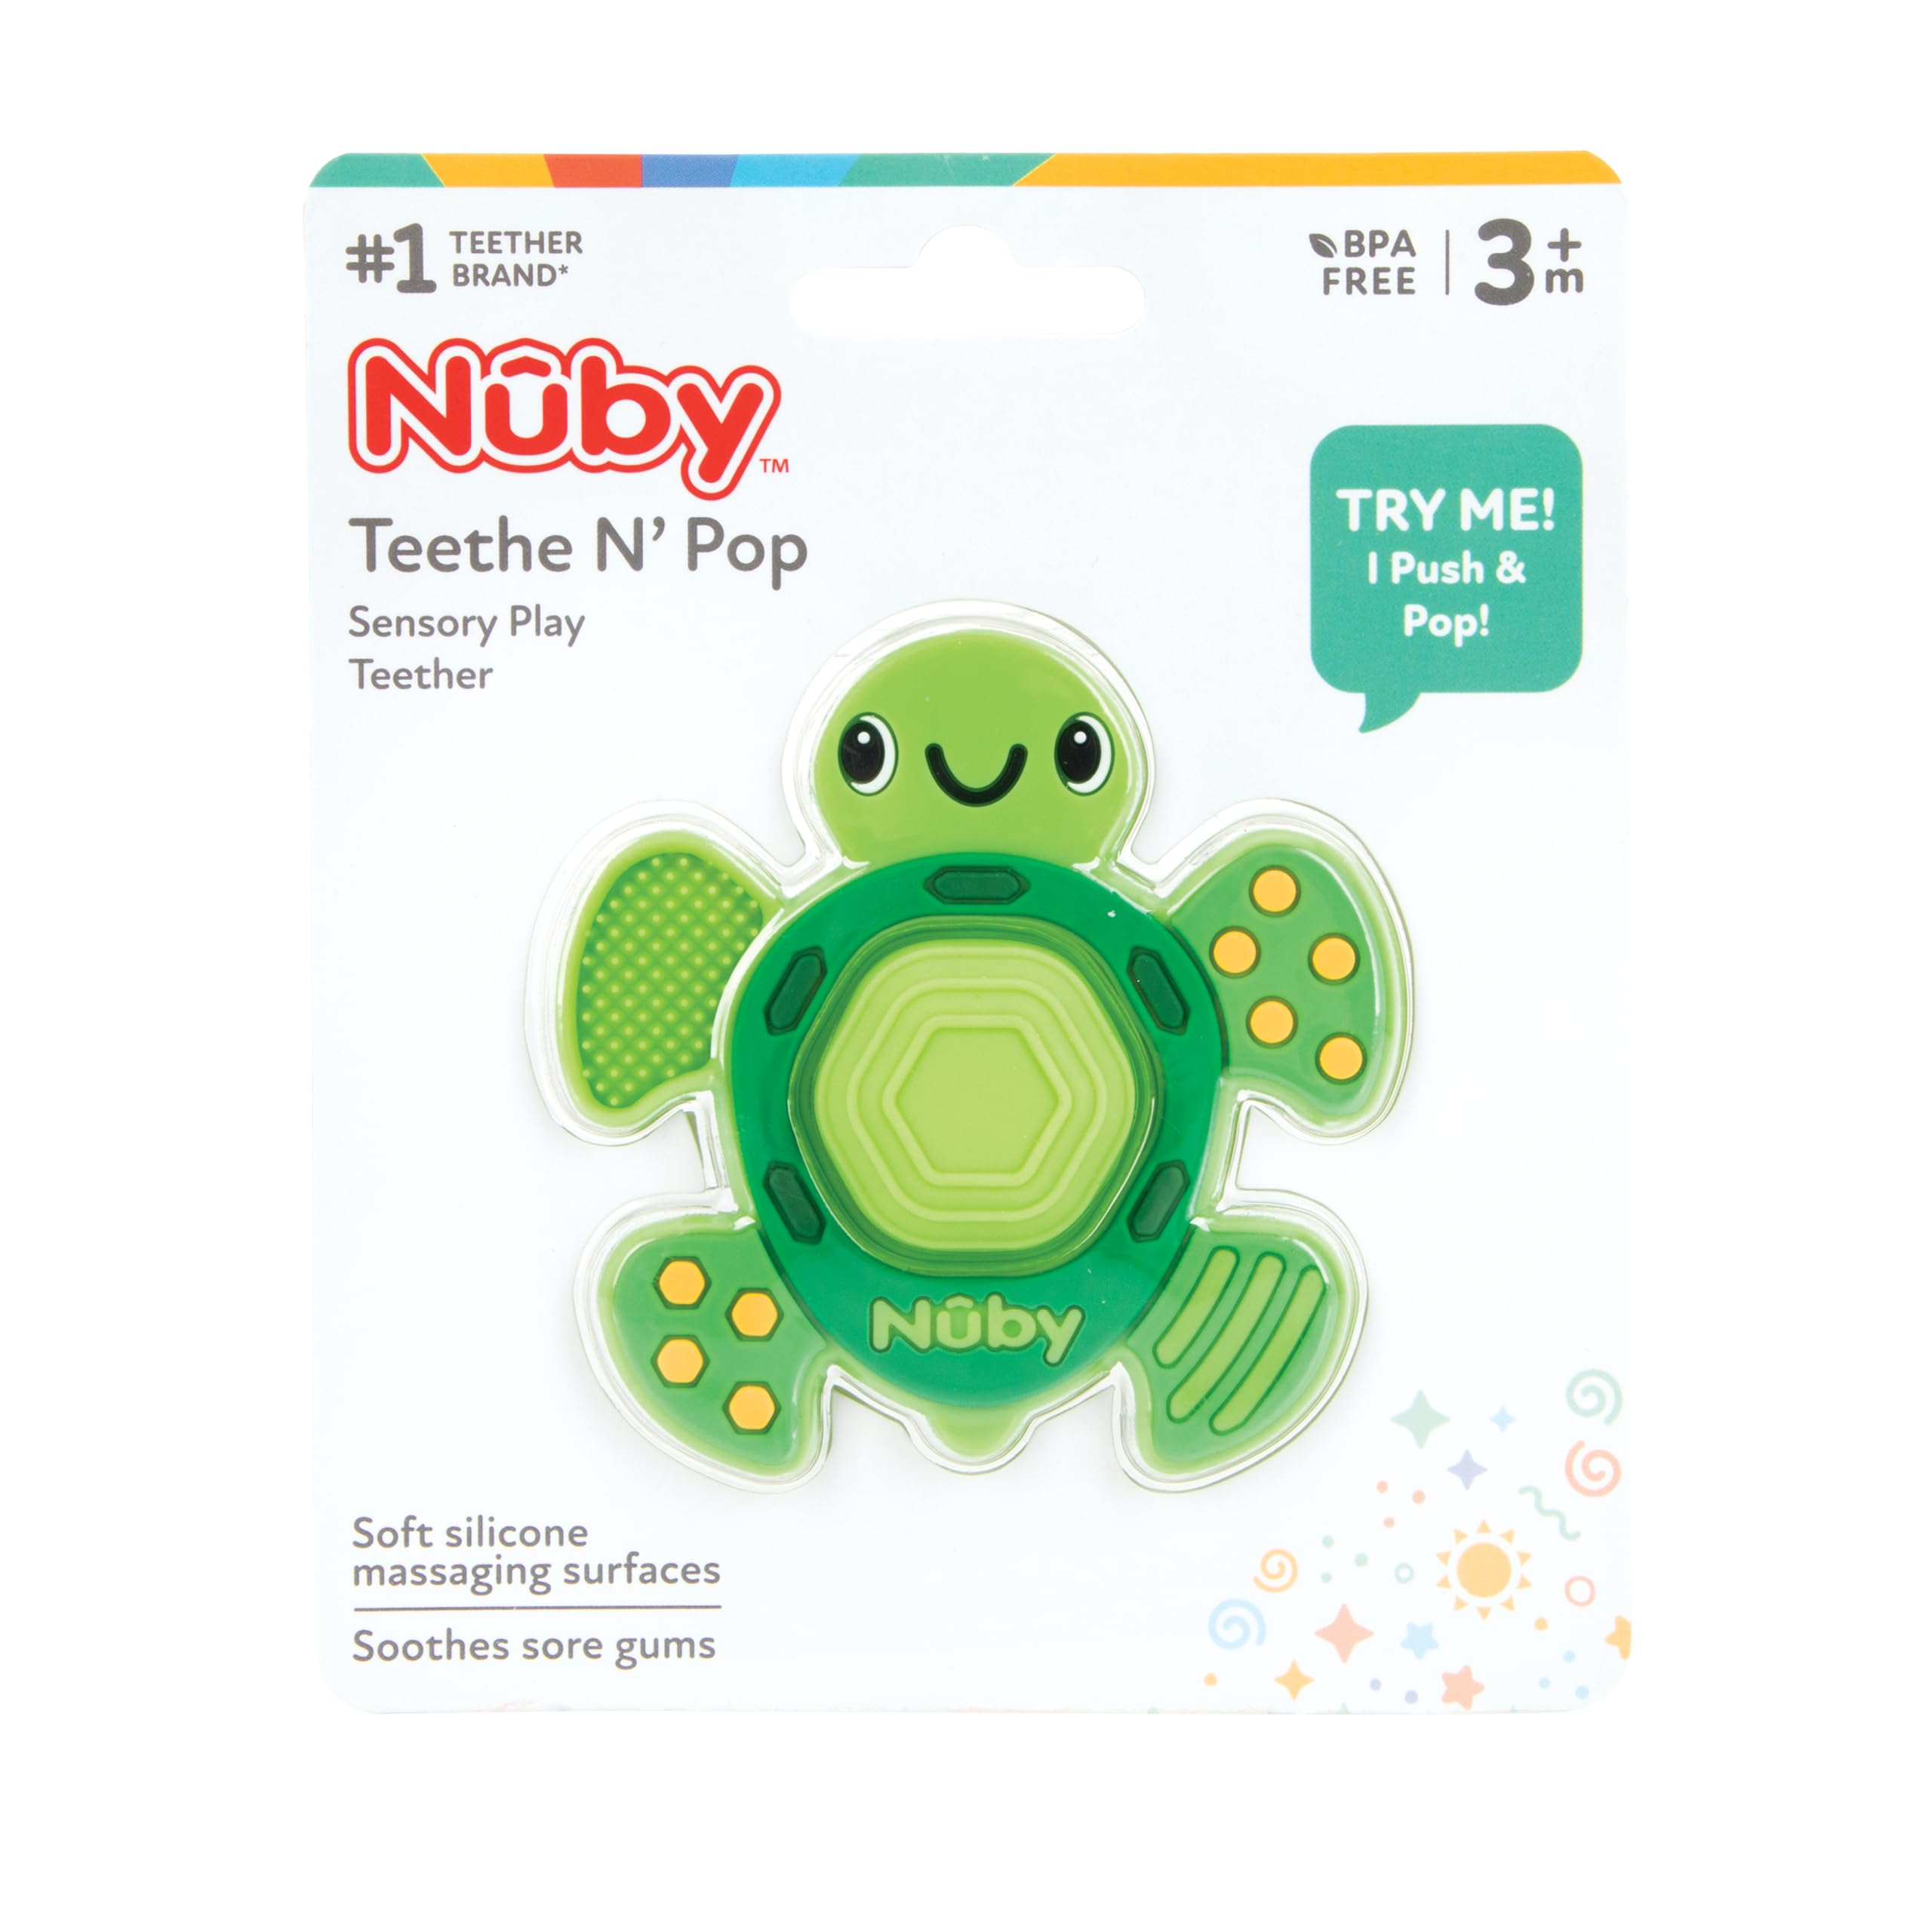 Nuby Teethe N' Pop Sensory Play Teether, BPA Free, 3+m, Turtle